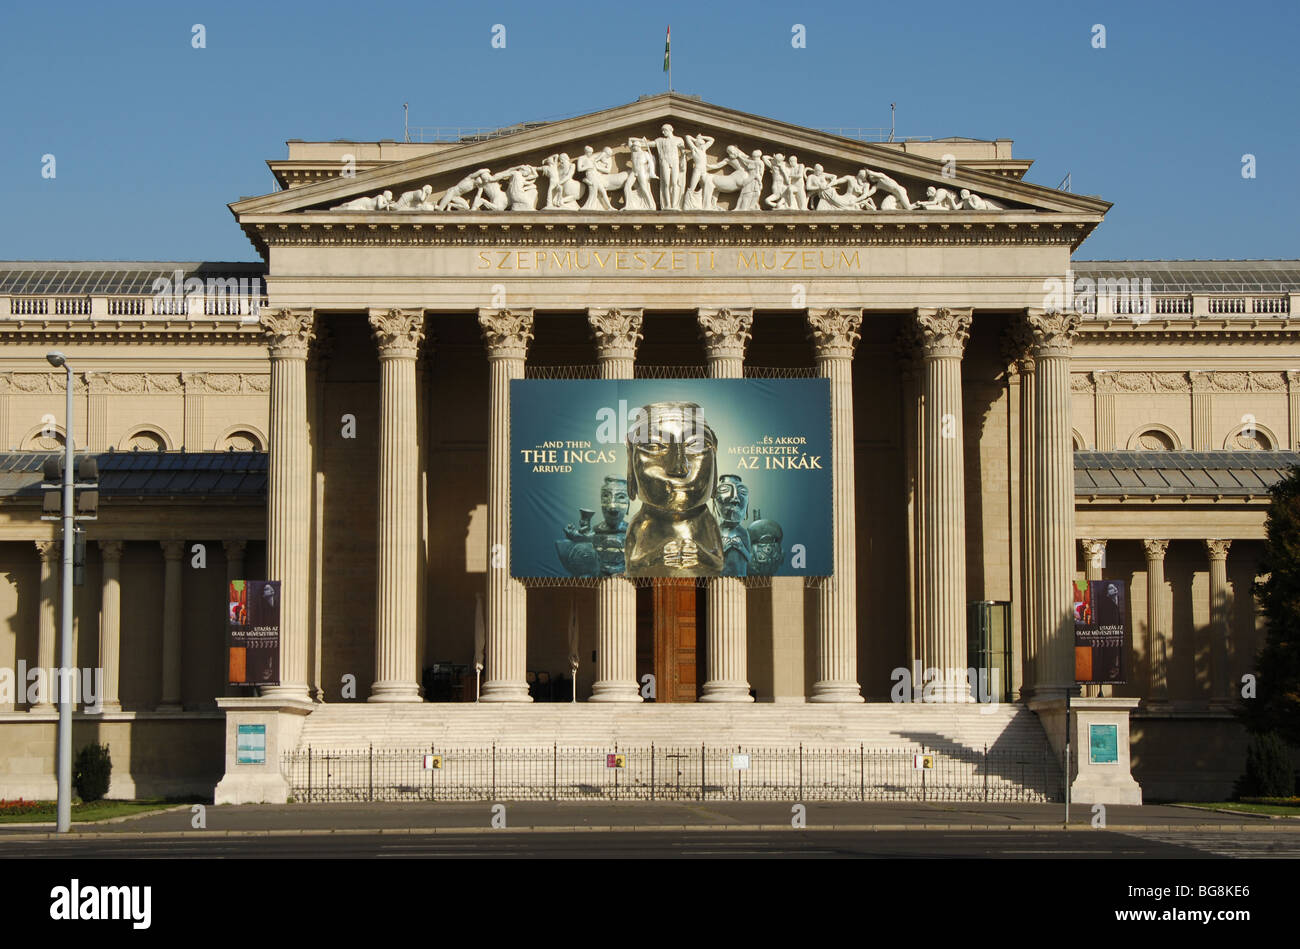 Museo de Bellas Artes (Szépművészeti). La fachada del edificio de estilo neoclásico situado en la Plaza de los Héroes. Budapest. Hungría. Foto de stock